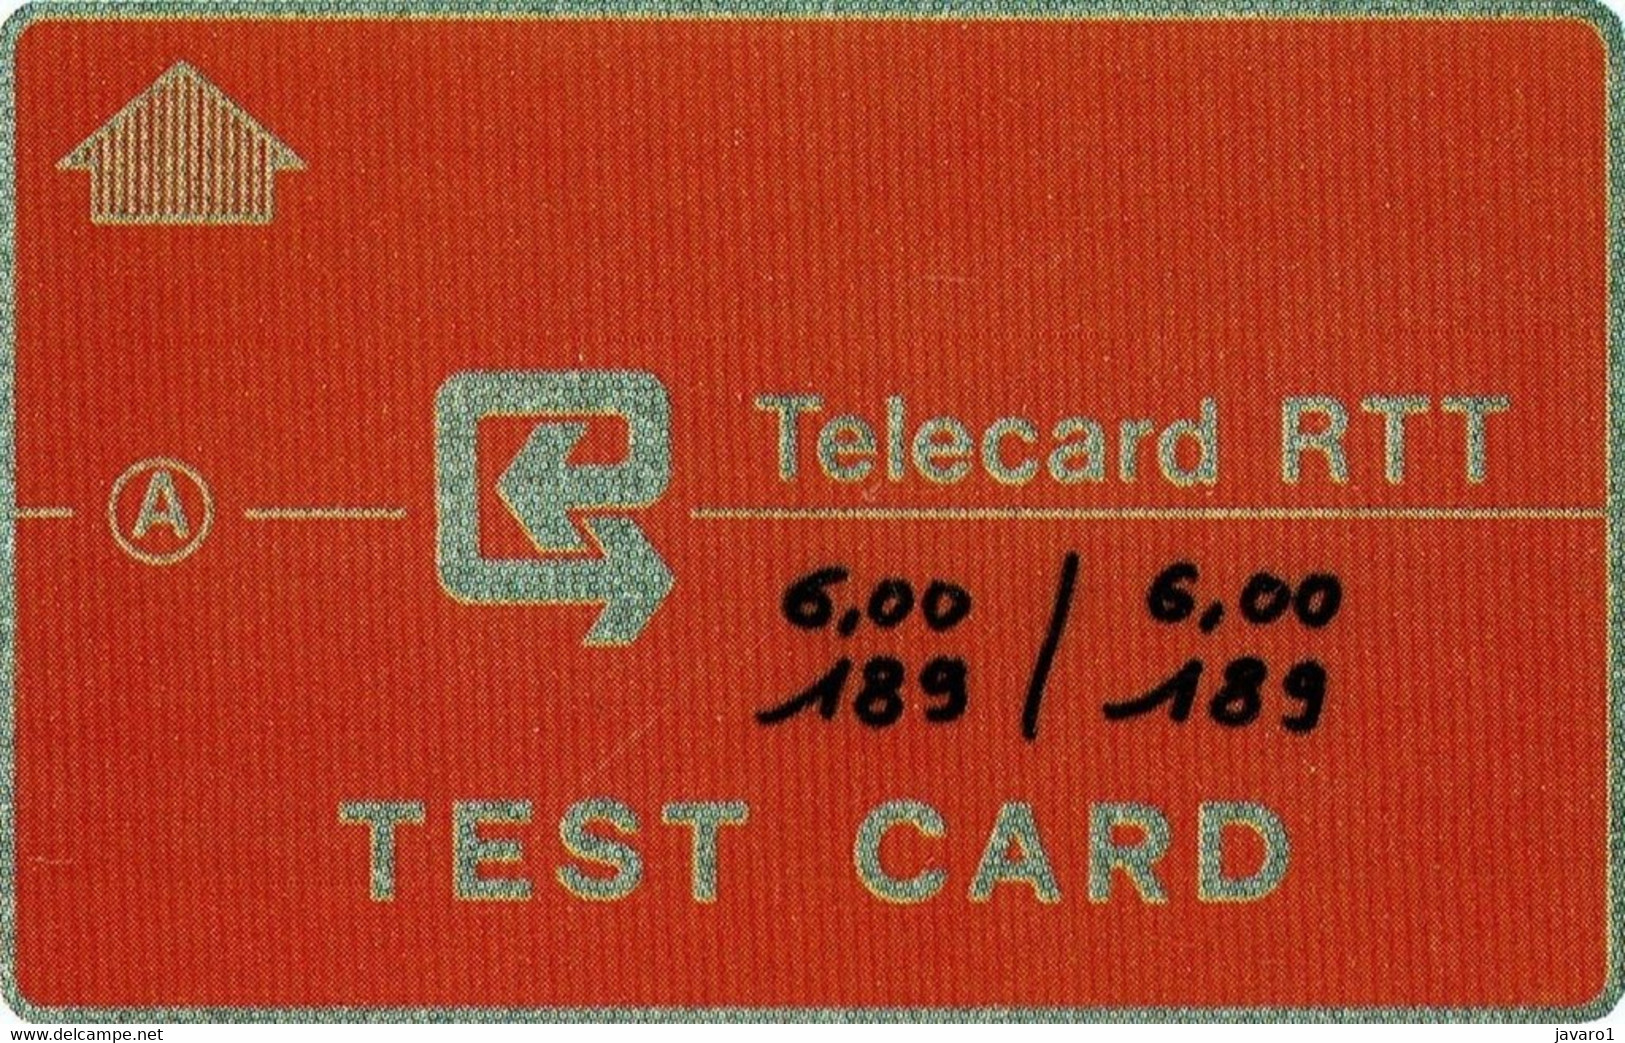 TESTCARD : TE01 T1 'TEST CARD' 17str ( Batch: 514144) MINT - Dienst & Test